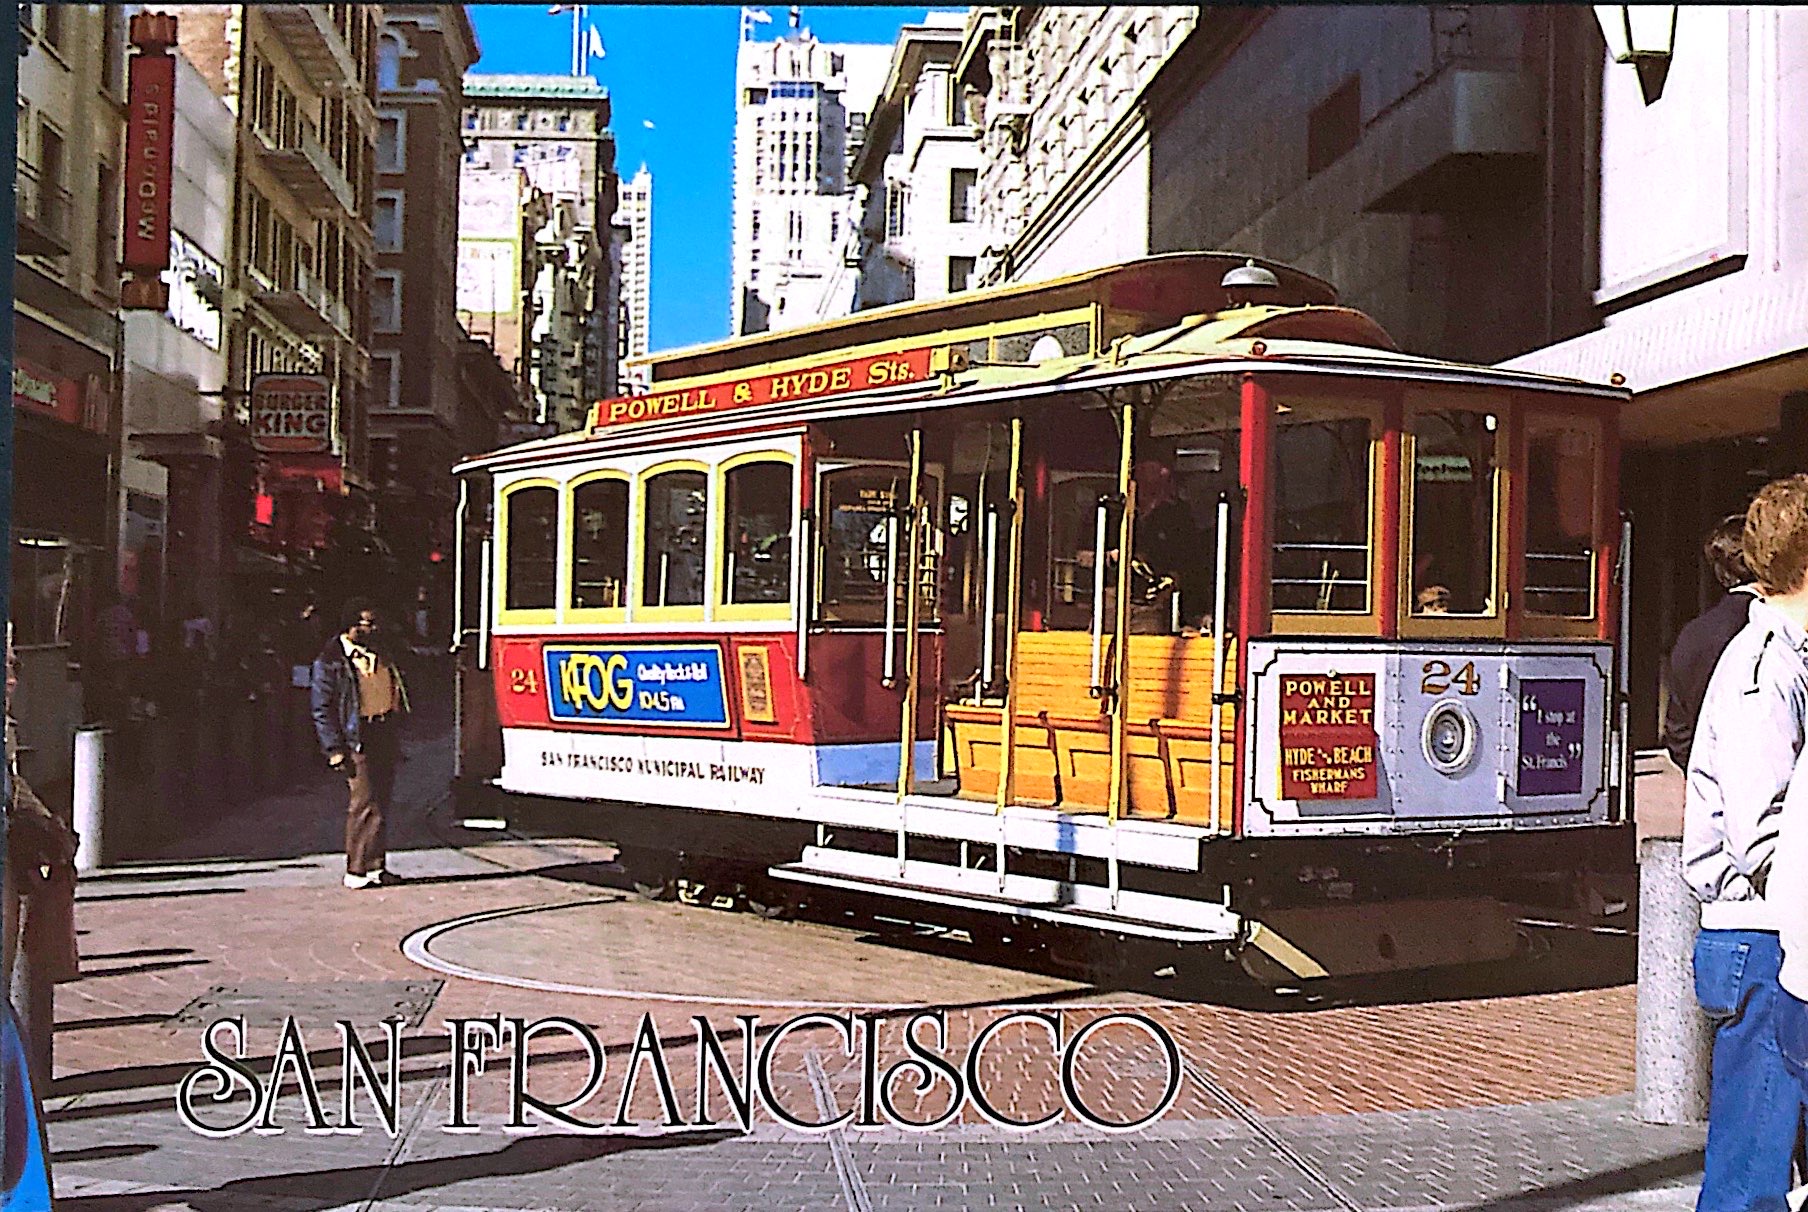 A trolley in San Francsico